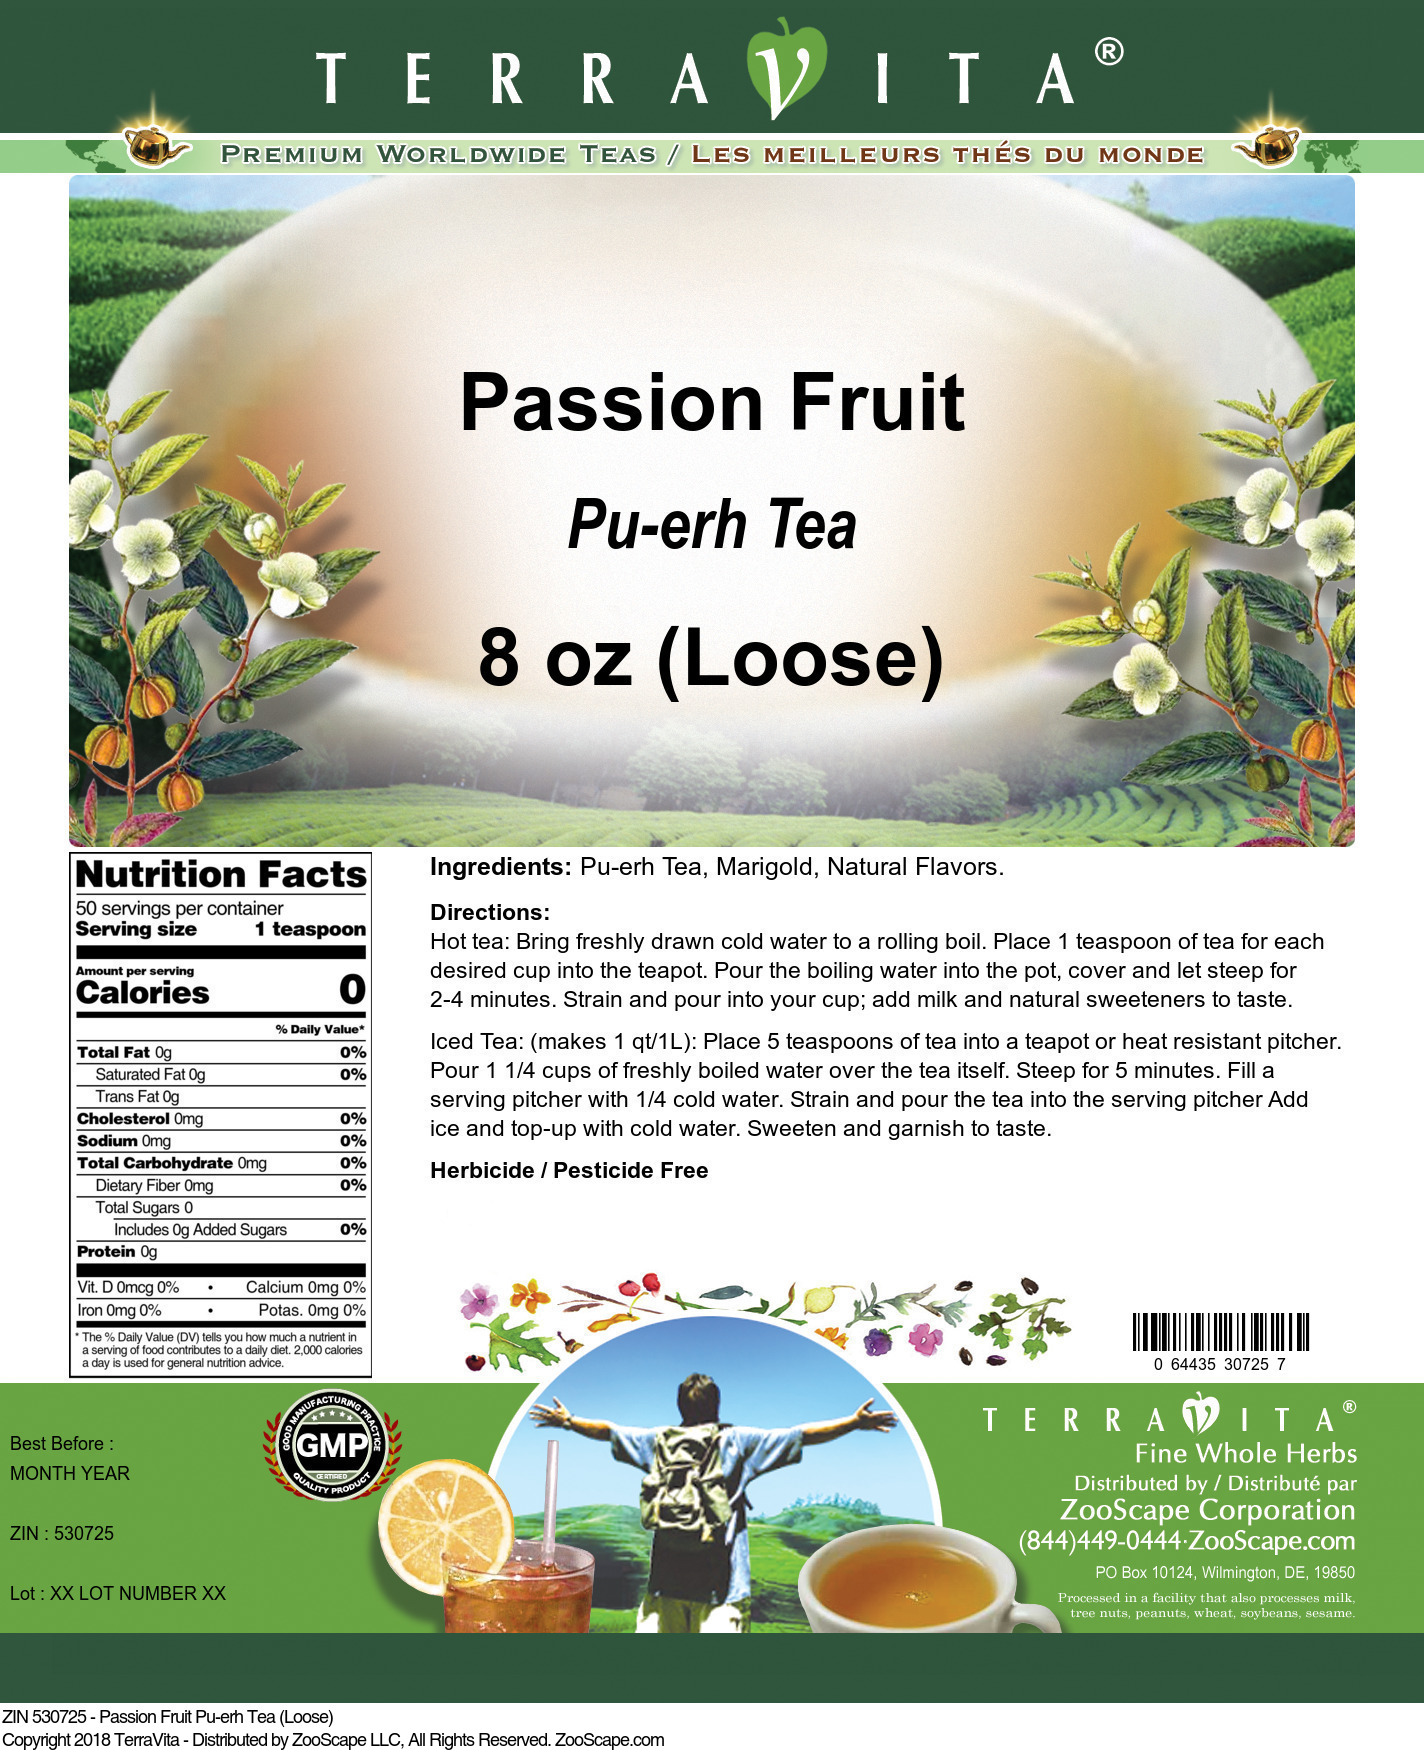 Passion Fruit Pu-erh Tea (Loose) - Label